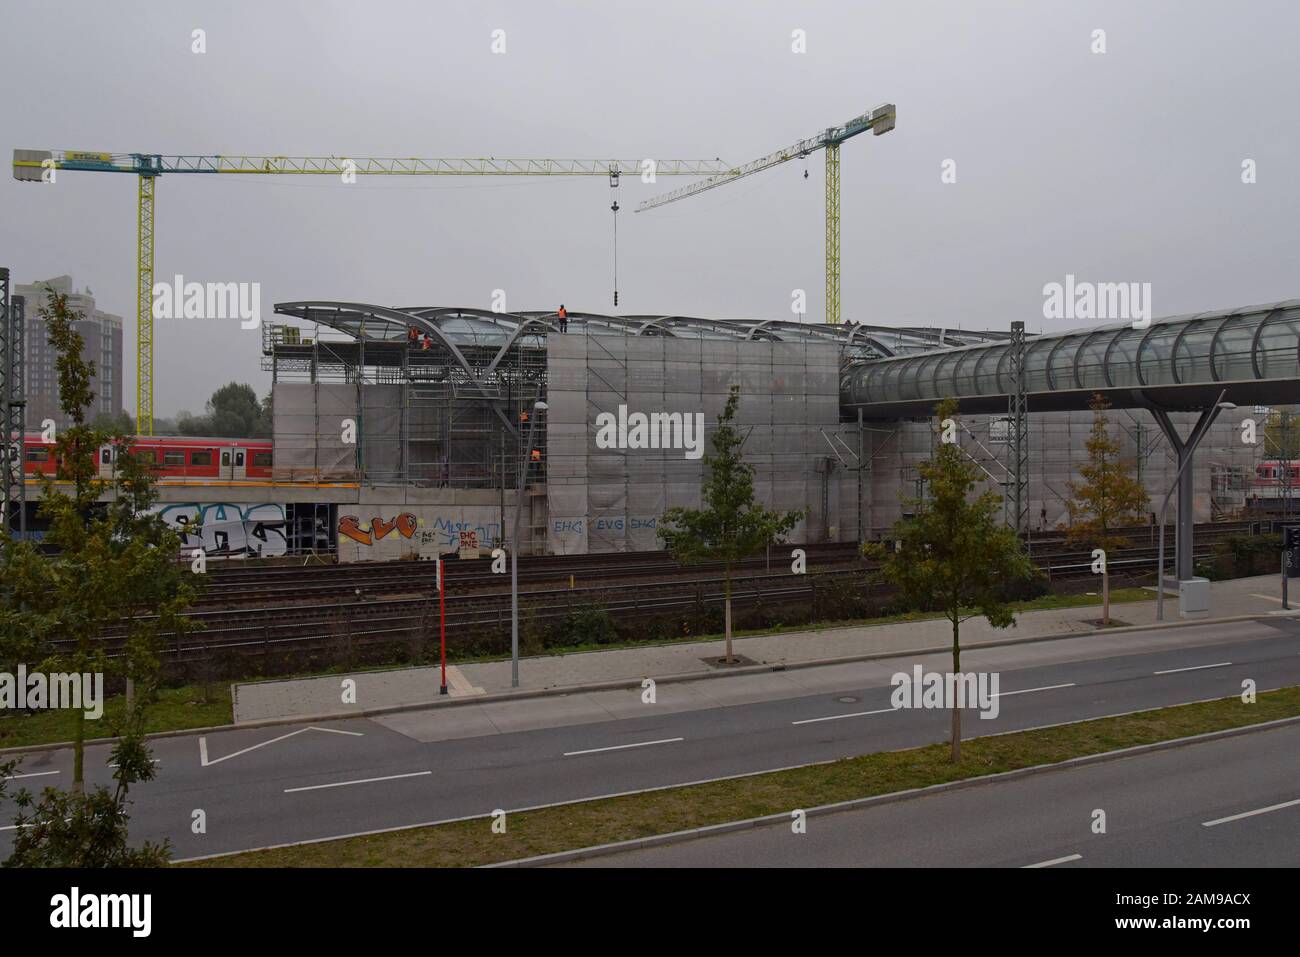 Nouveau bâtiment de la station de métro U-Bahn à Elbbrücken près des ponts de theElbe, Hambourg. Ouvert En Décembre 2018. Une passerelle surélevée relie les stations de métro et de train urbain Banque D'Images